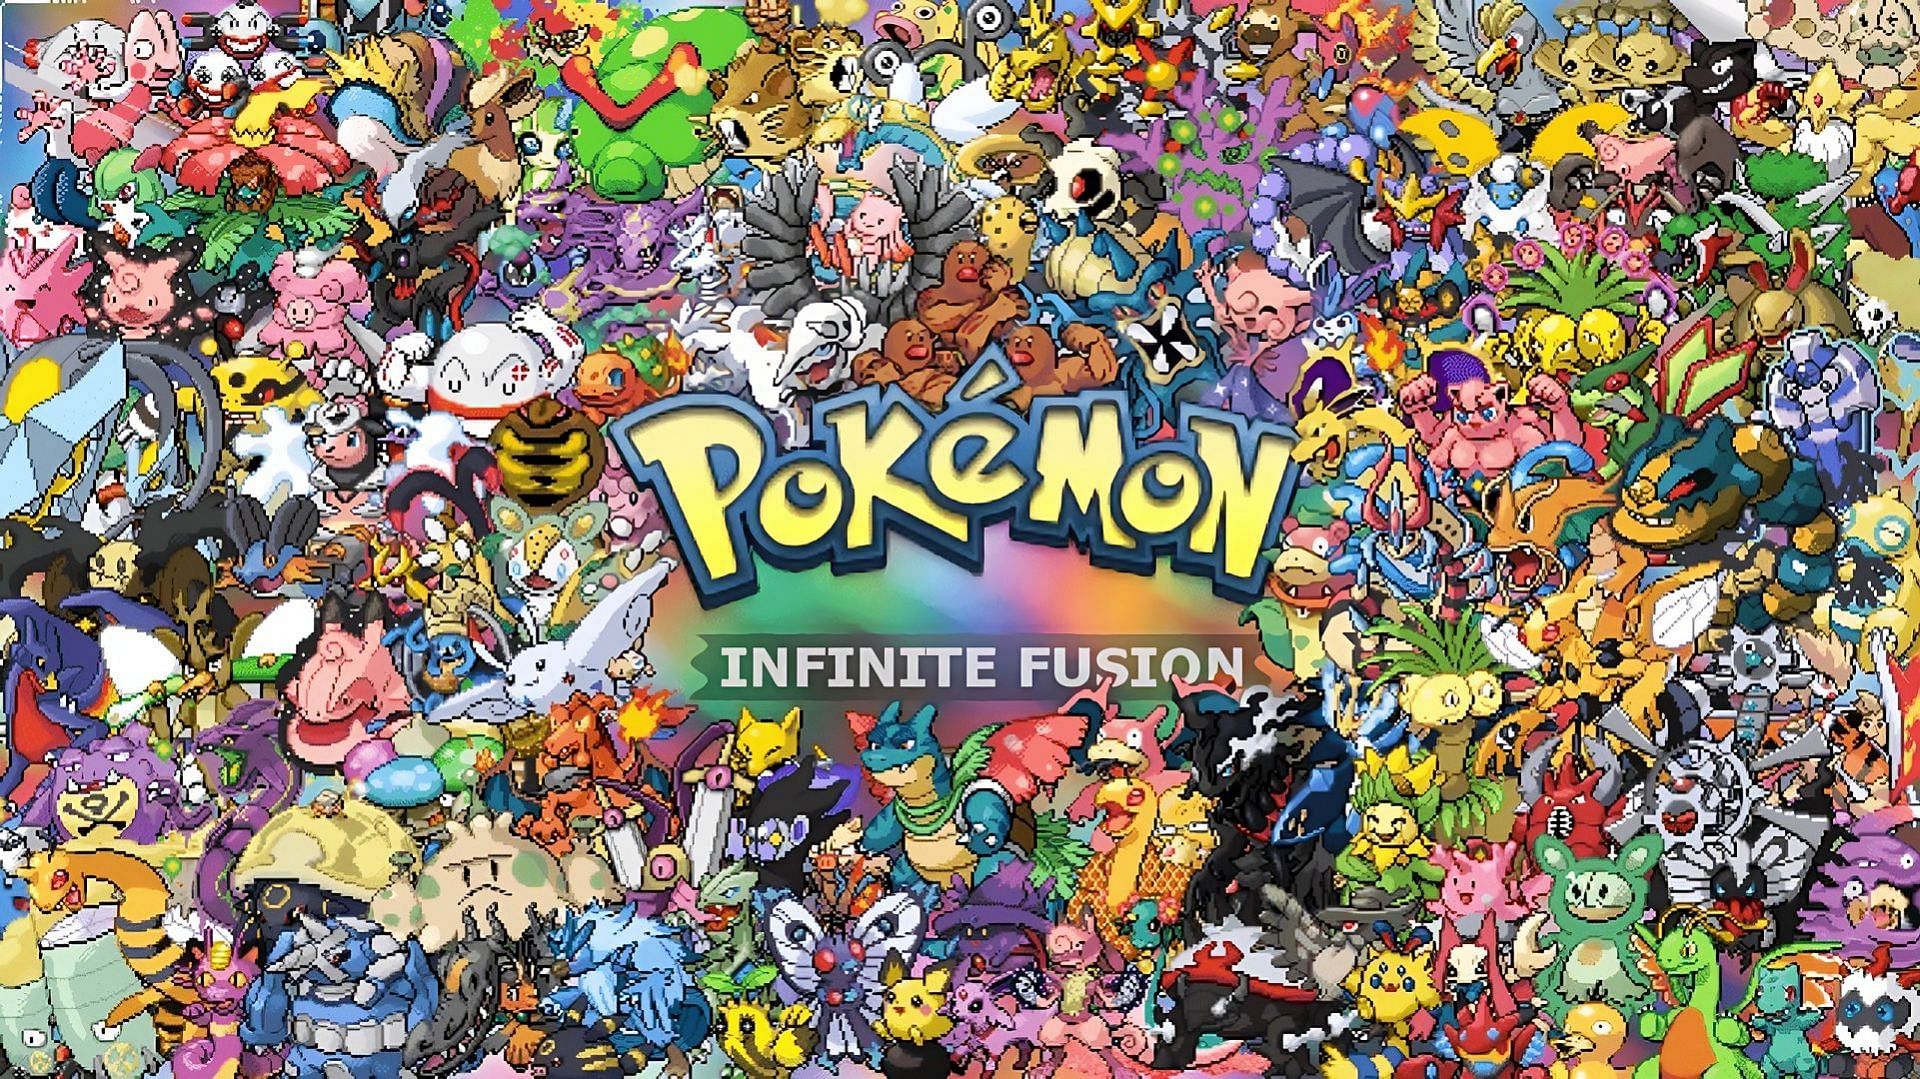 Randomize Pokemon Infinite Fusion (2023) - Complete Guide